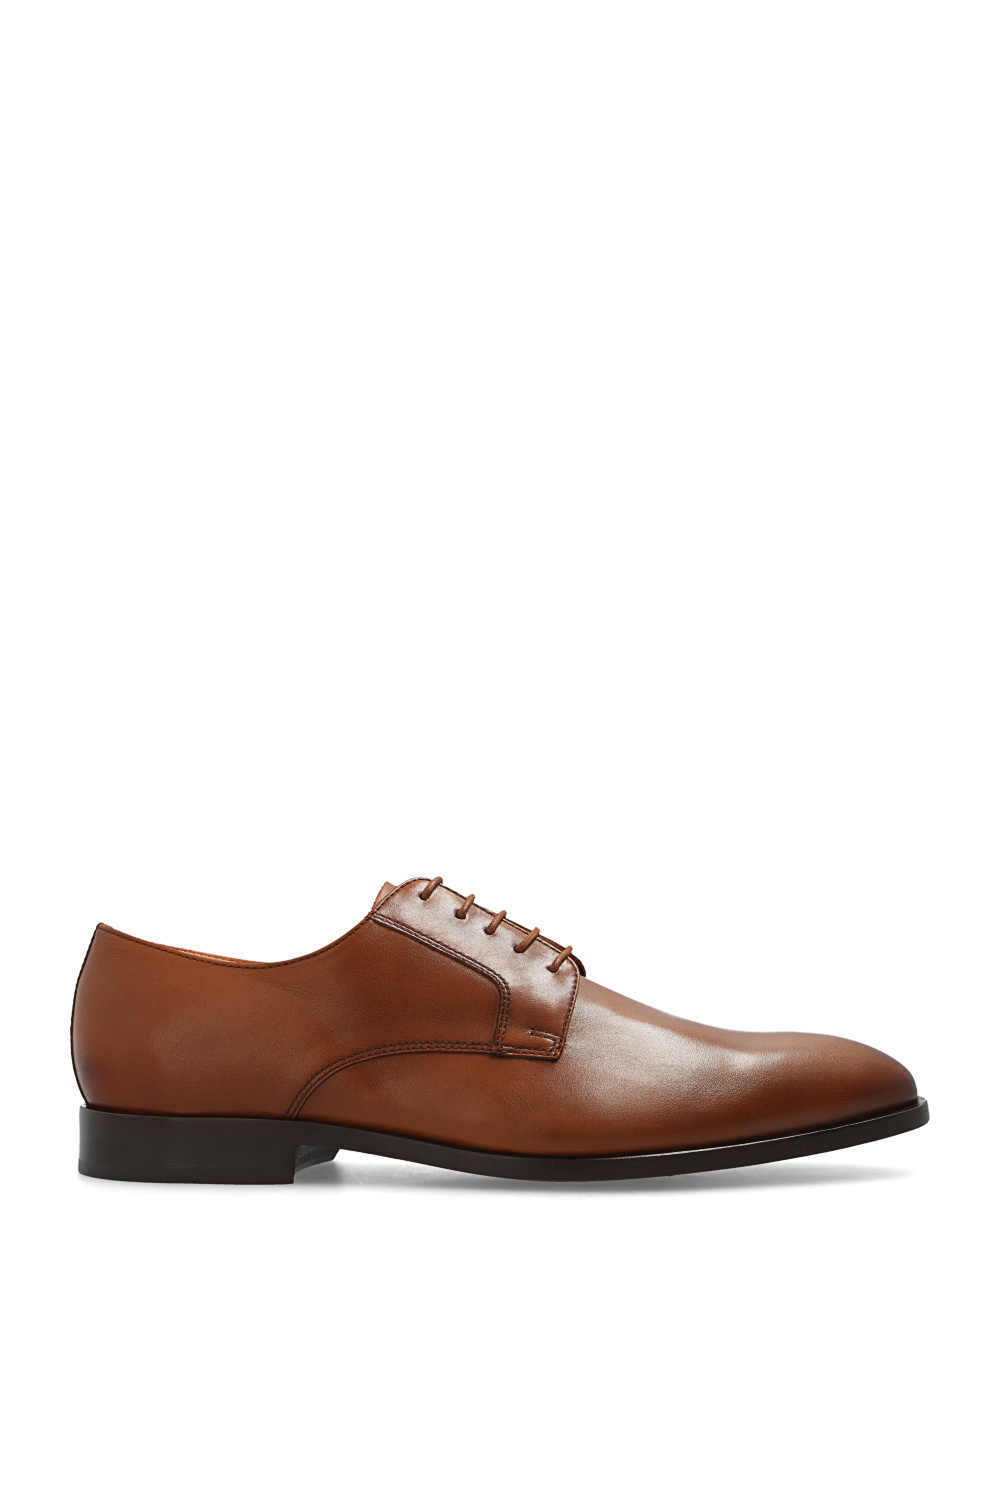 PS Paul Smith ‘Rufus’ shoes | Men's Shoes | Vitkac